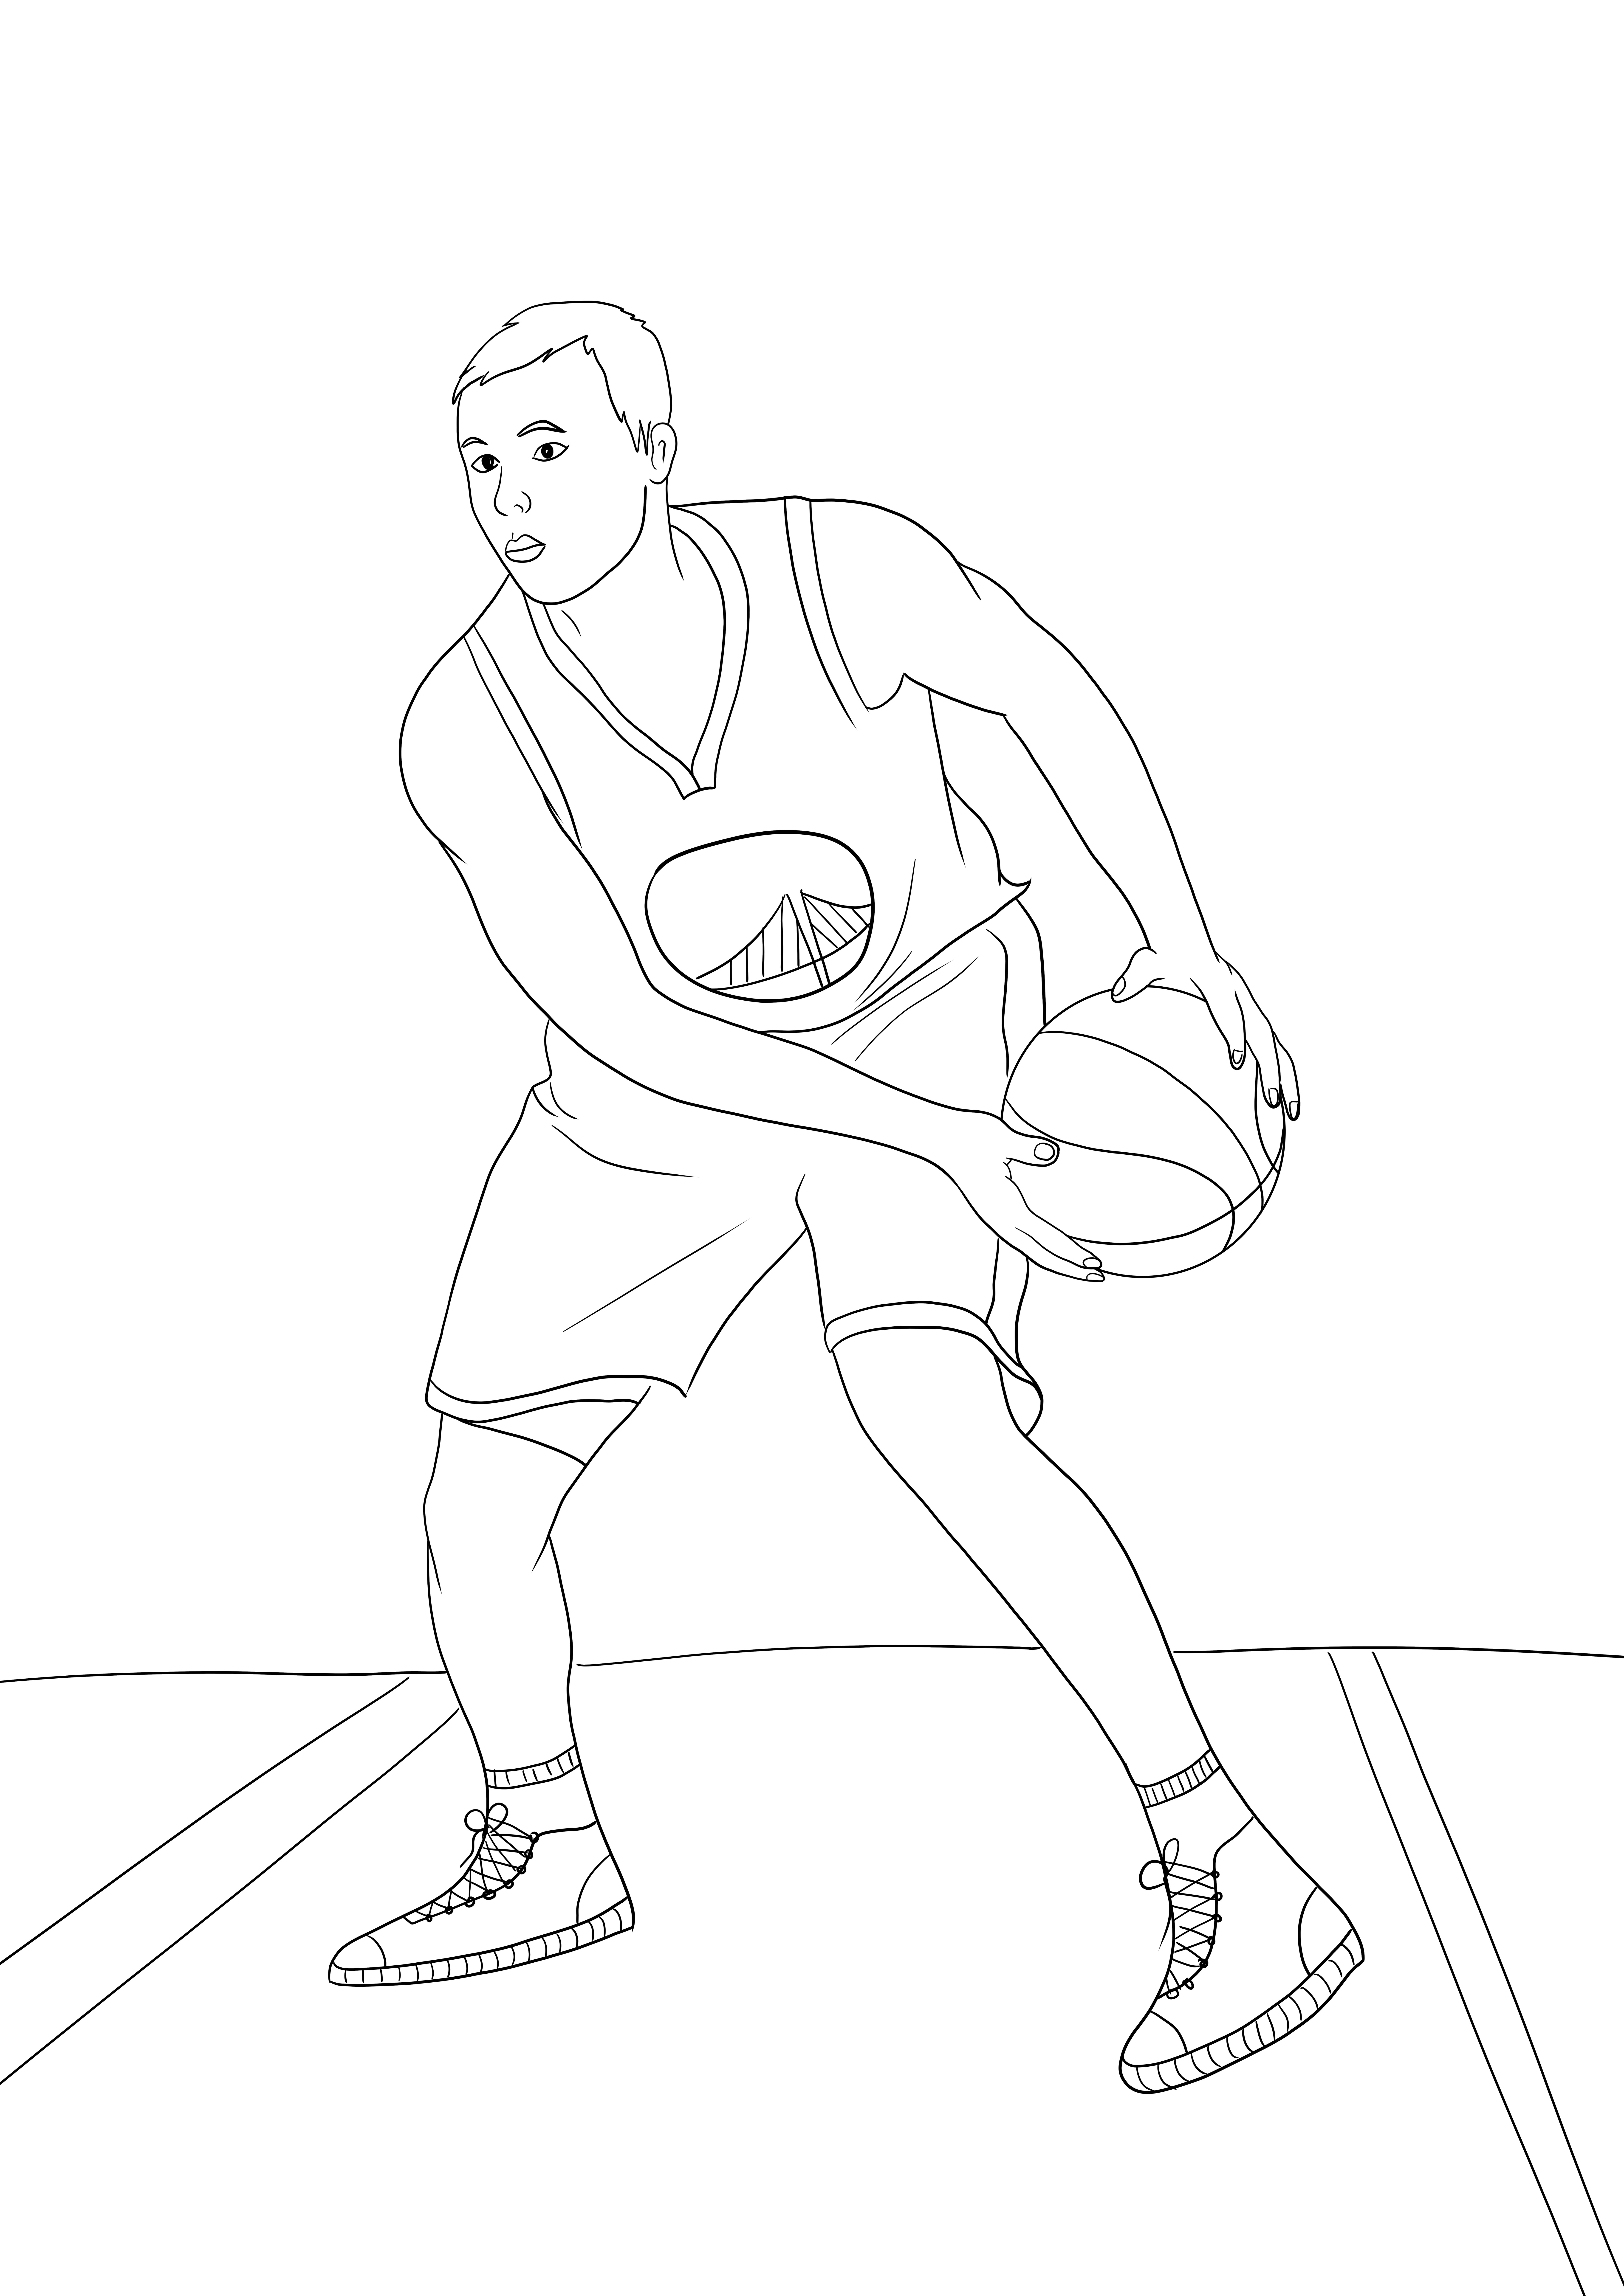 Stephen Curry z NBA prosta kolorowanka i darmowy obraz do pobrania